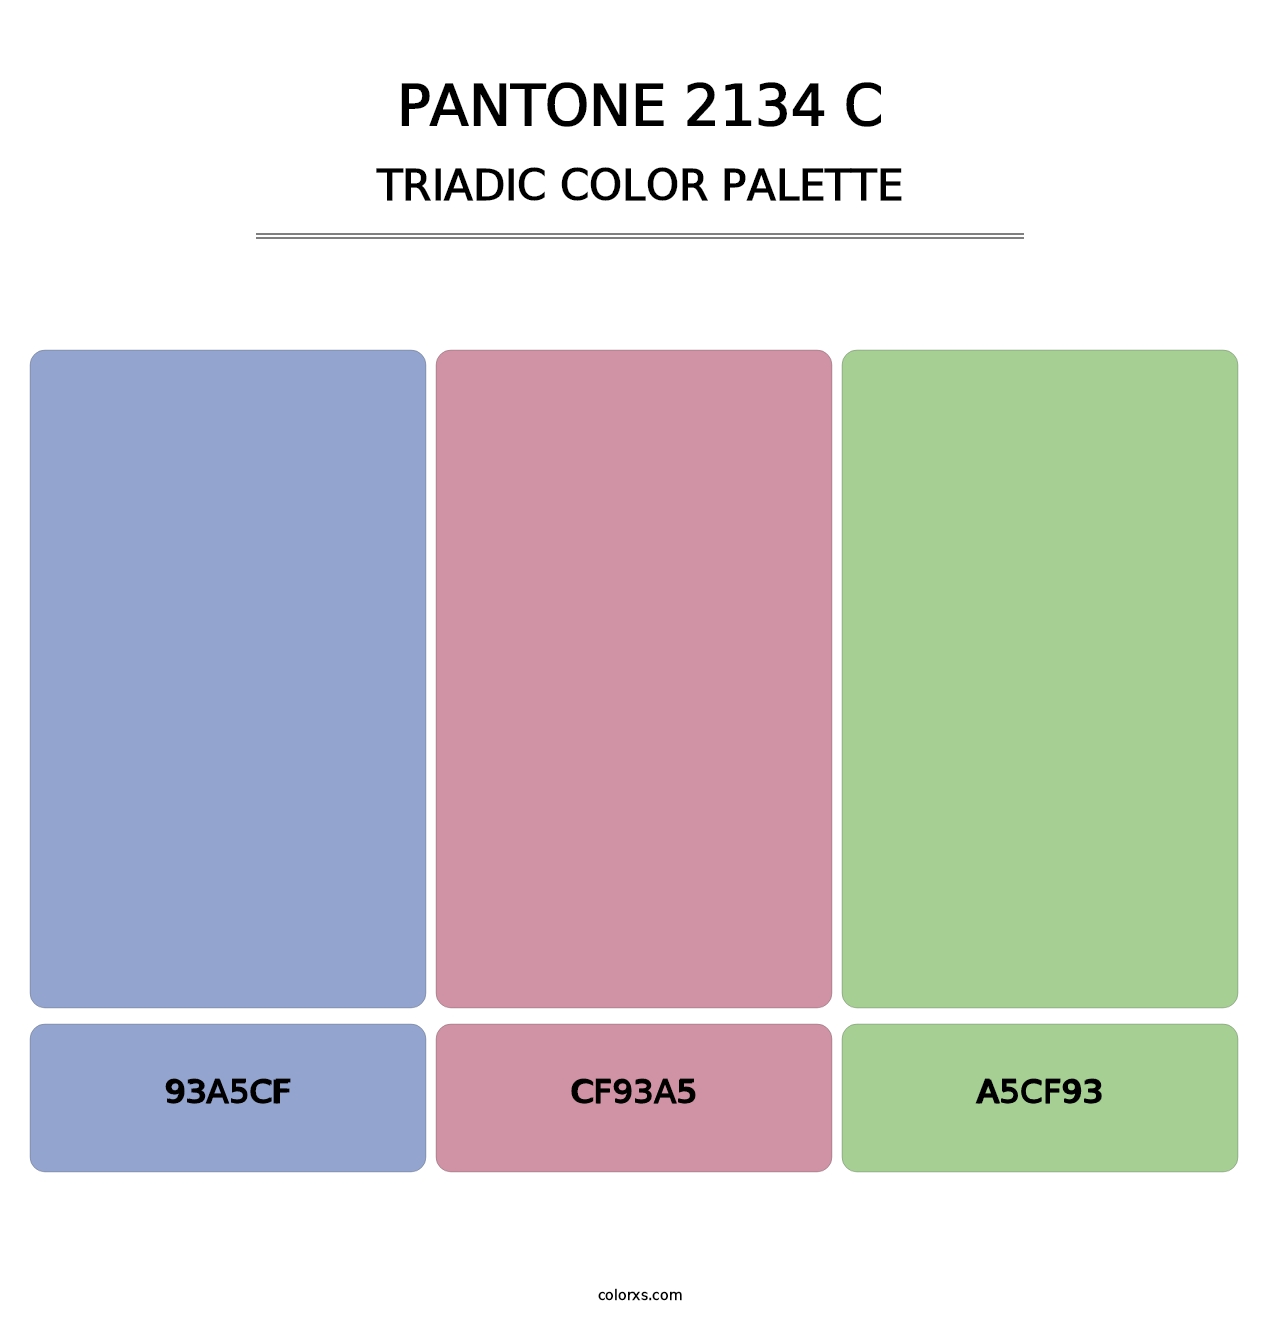 PANTONE 2134 C - Triadic Color Palette